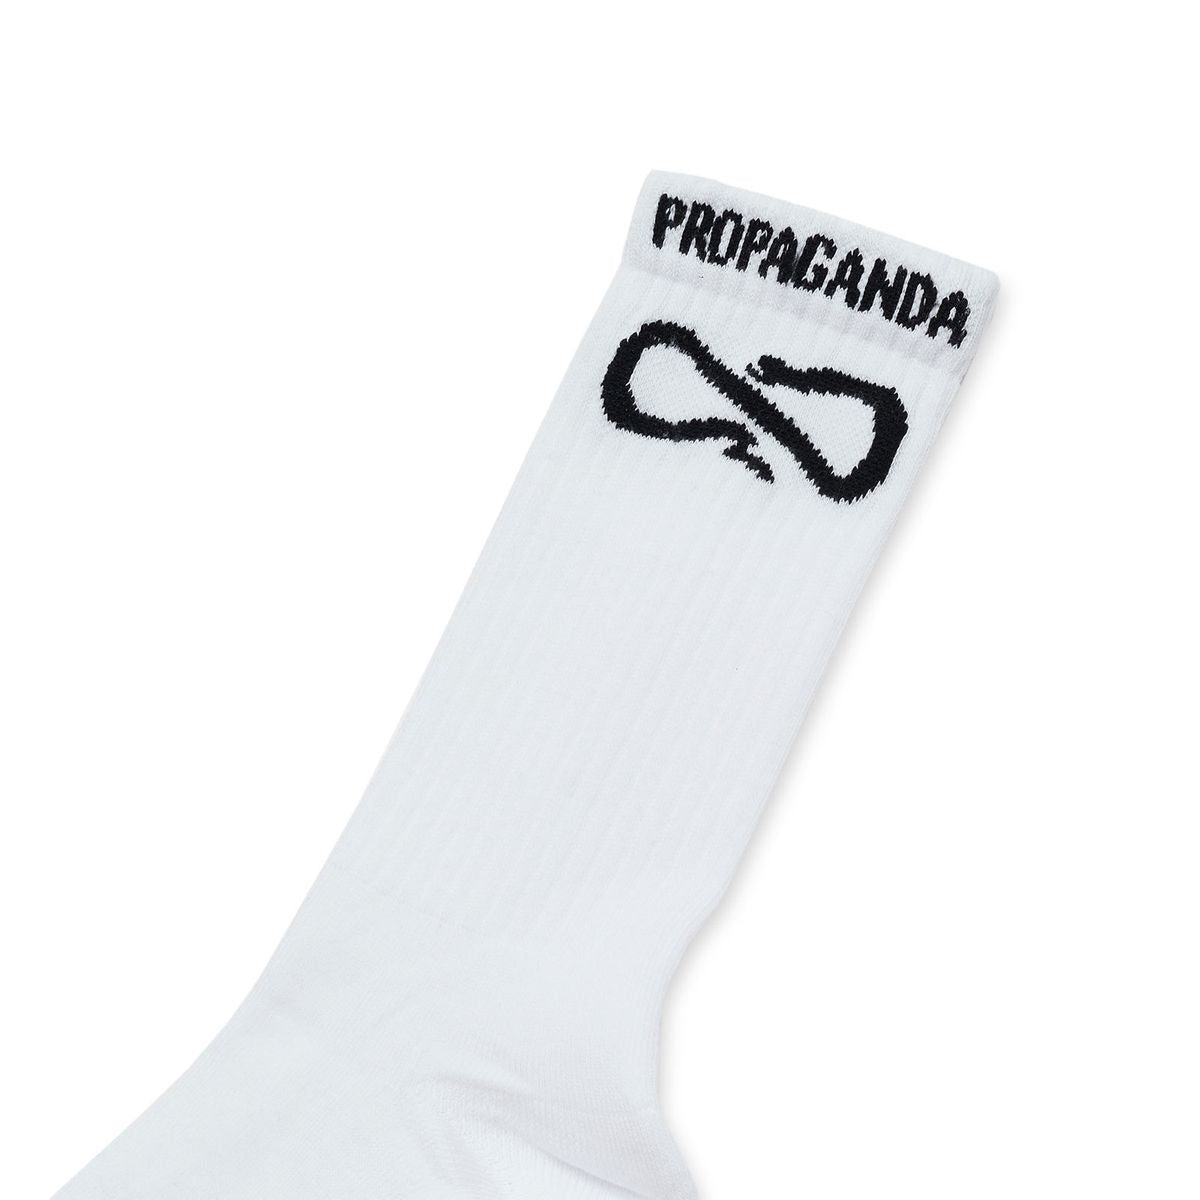 21FWPRAC667 - Socks - Propaganda